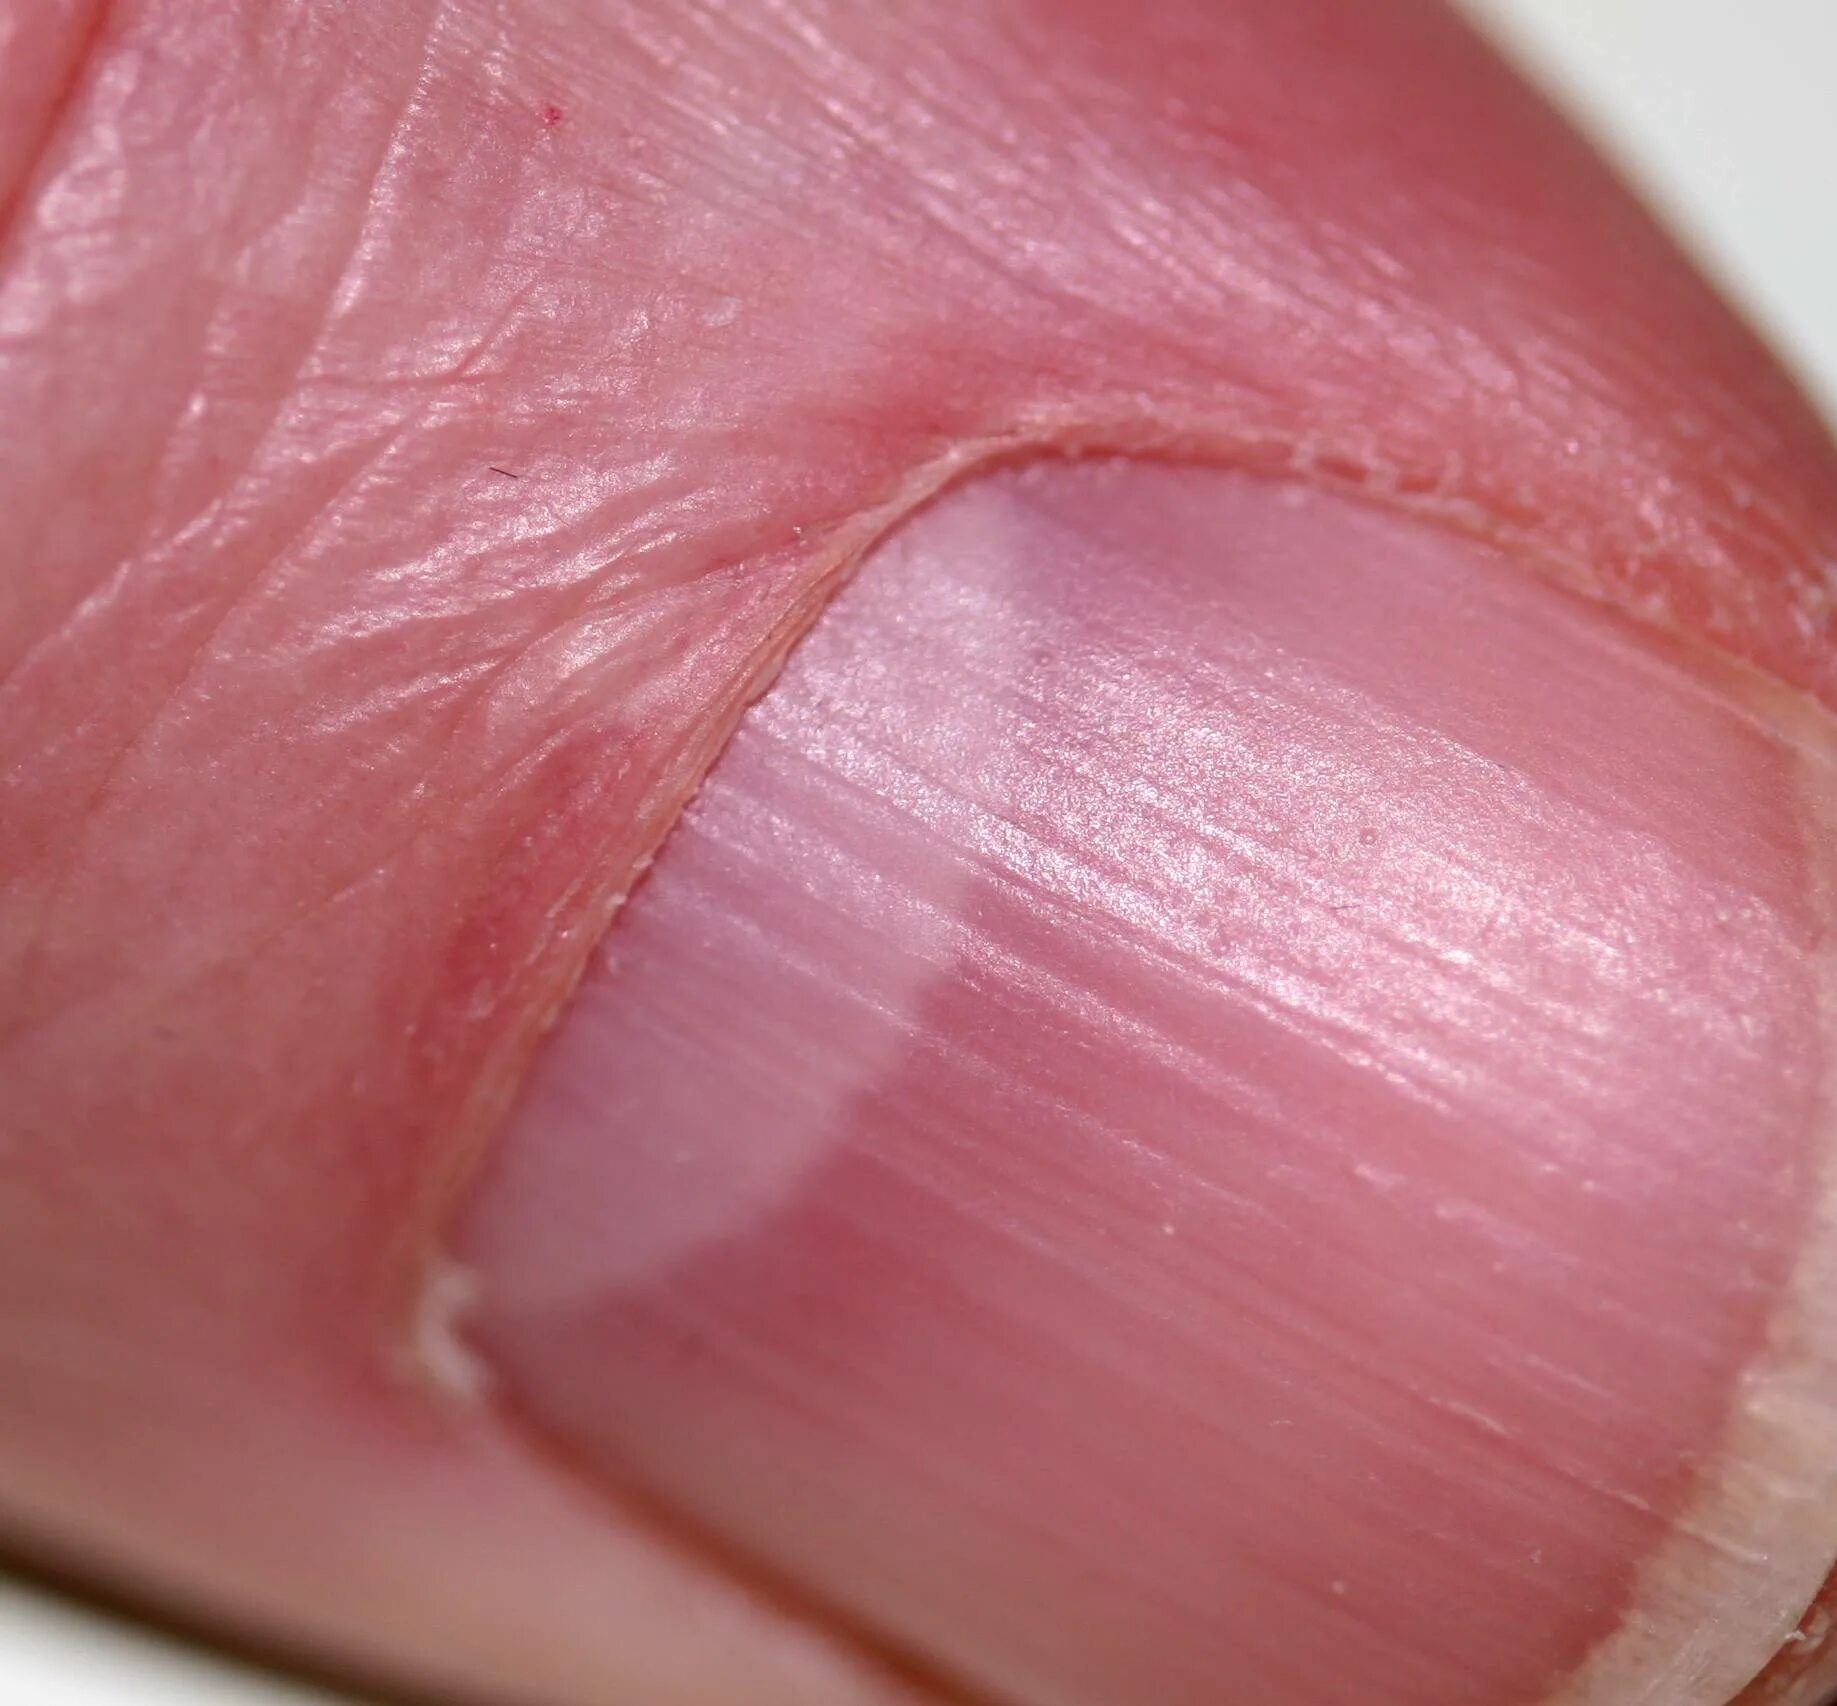 Полоски на ногтях причины вертикальные у женщин. Онихорексис трахионихия. Онихорексис онихомикоз. Псориатическая ониходистрофия. Поперечные борозды бо-Рейли.